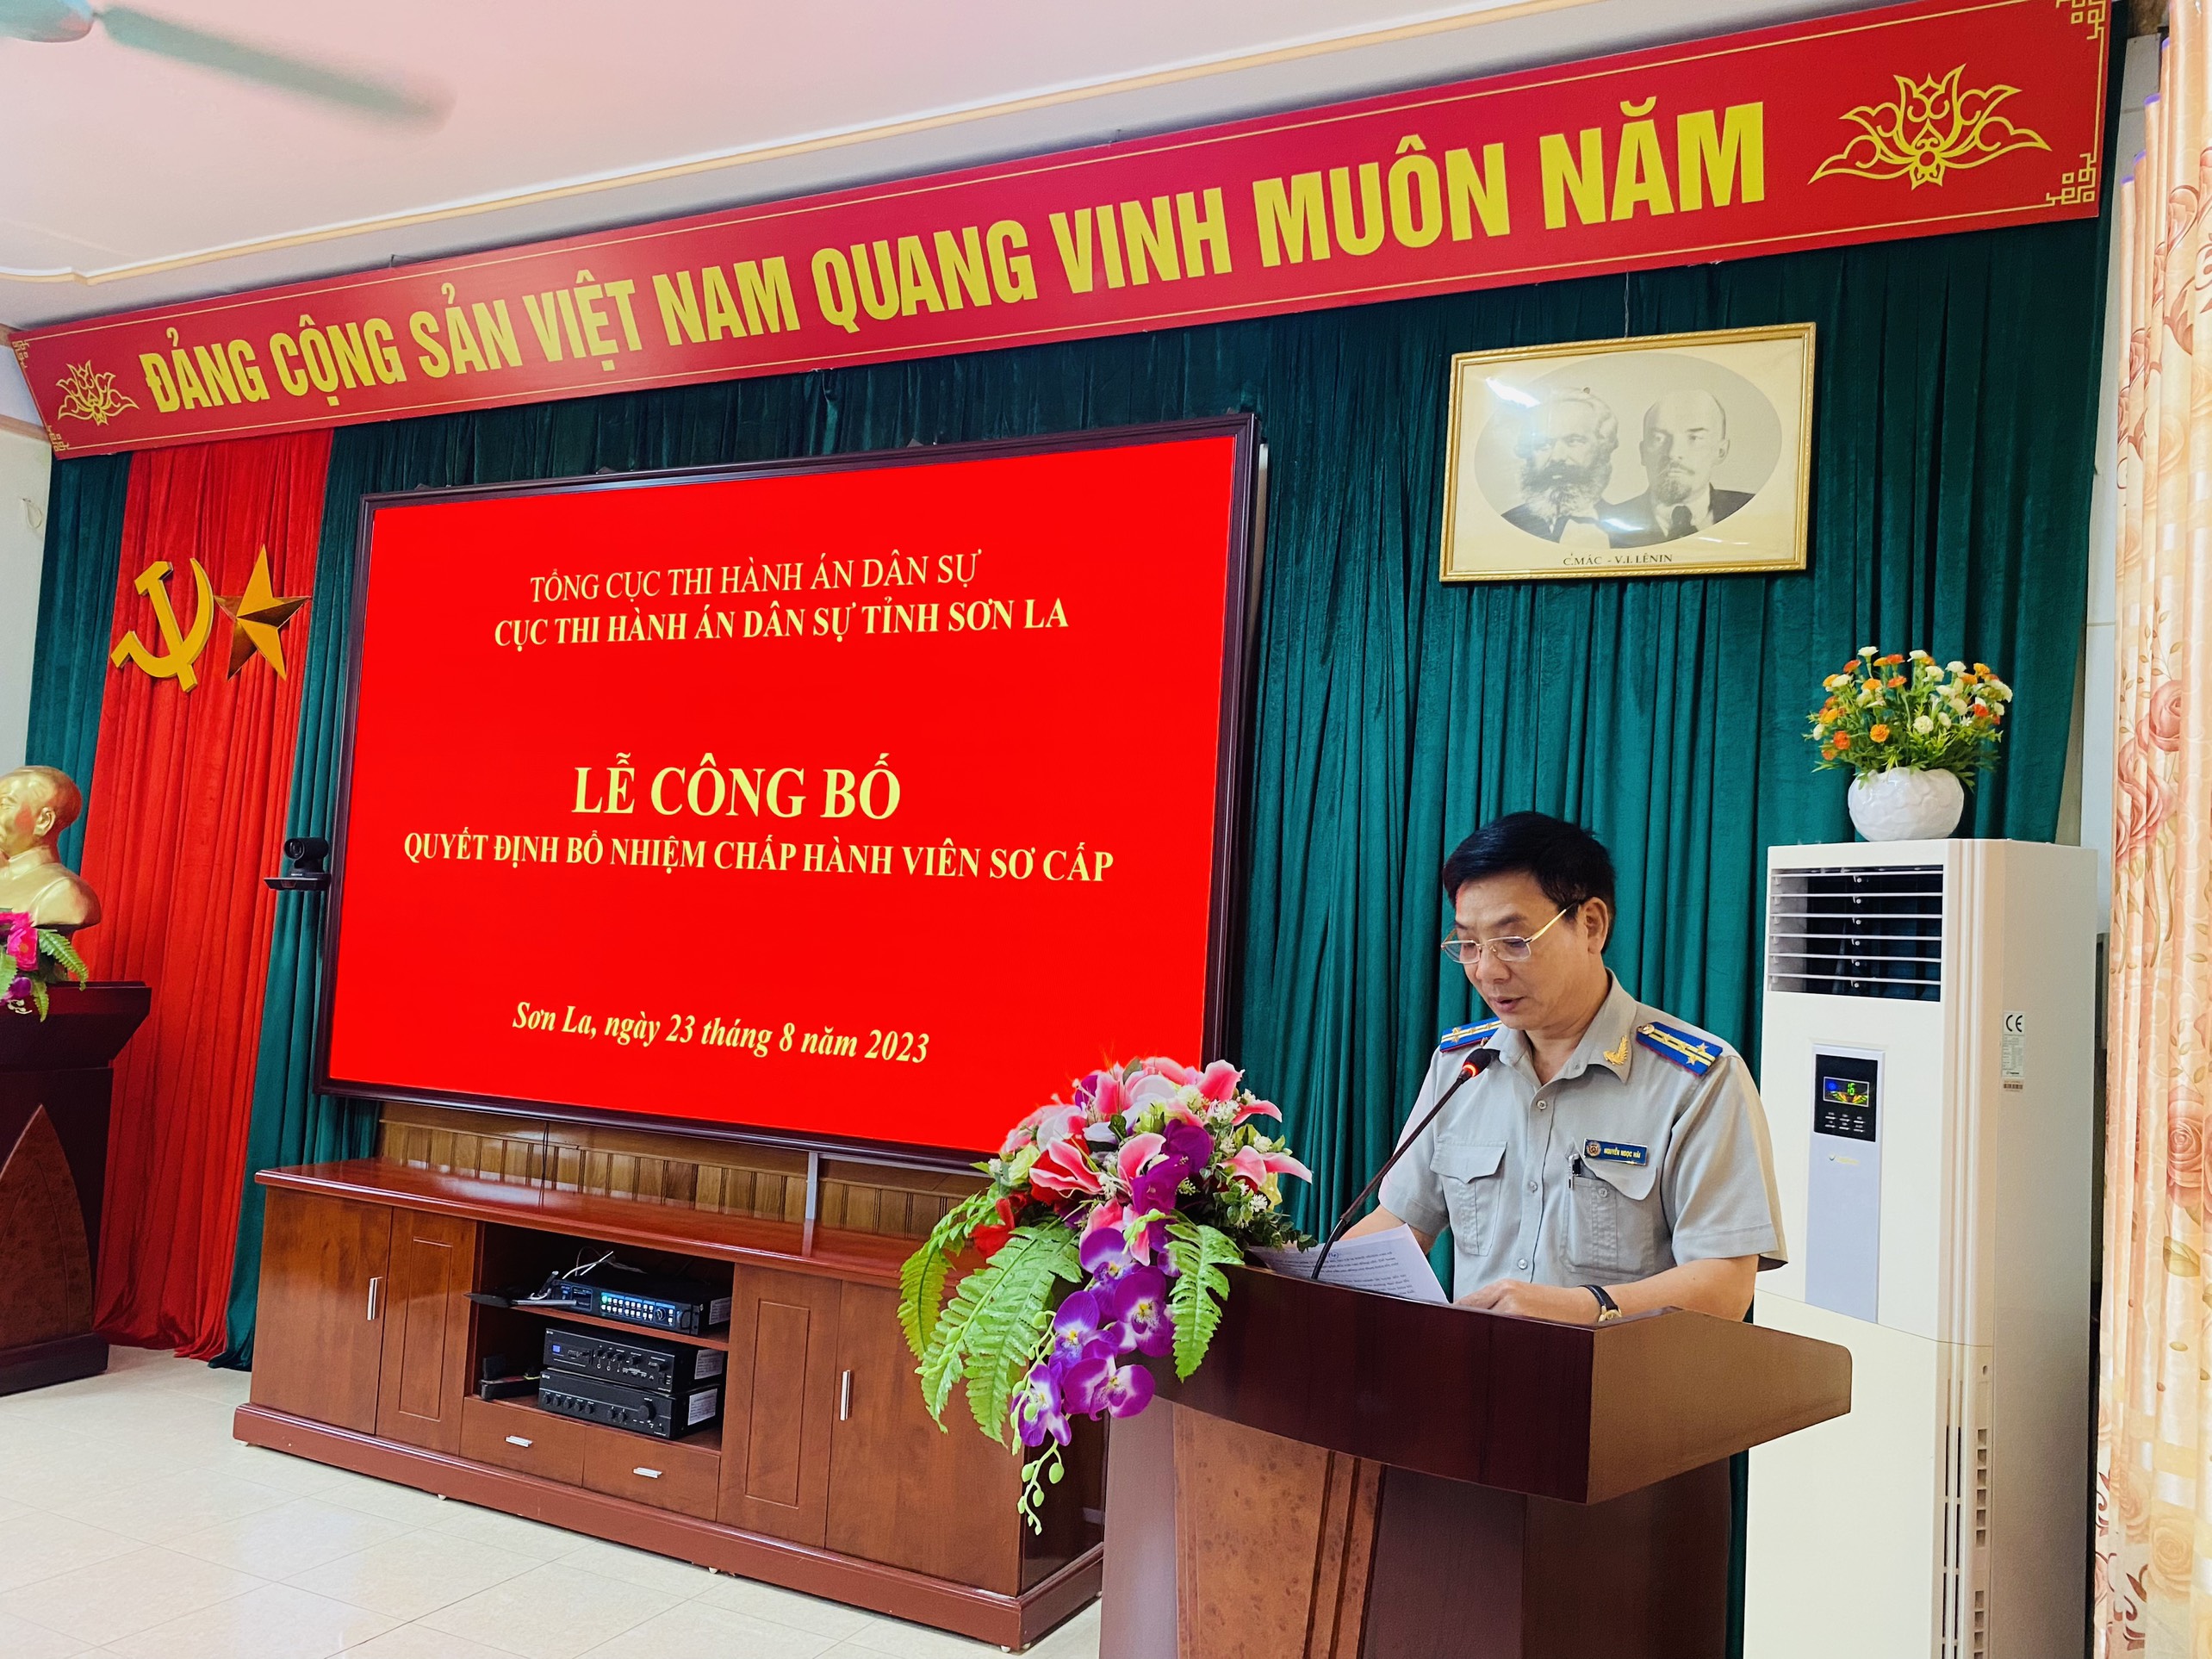 Cục Thi hành án dân sự tỉnh Sơn La tổ chức lễ công bố Quyết định bổ nhiệm chấp hành viên sơ cấp